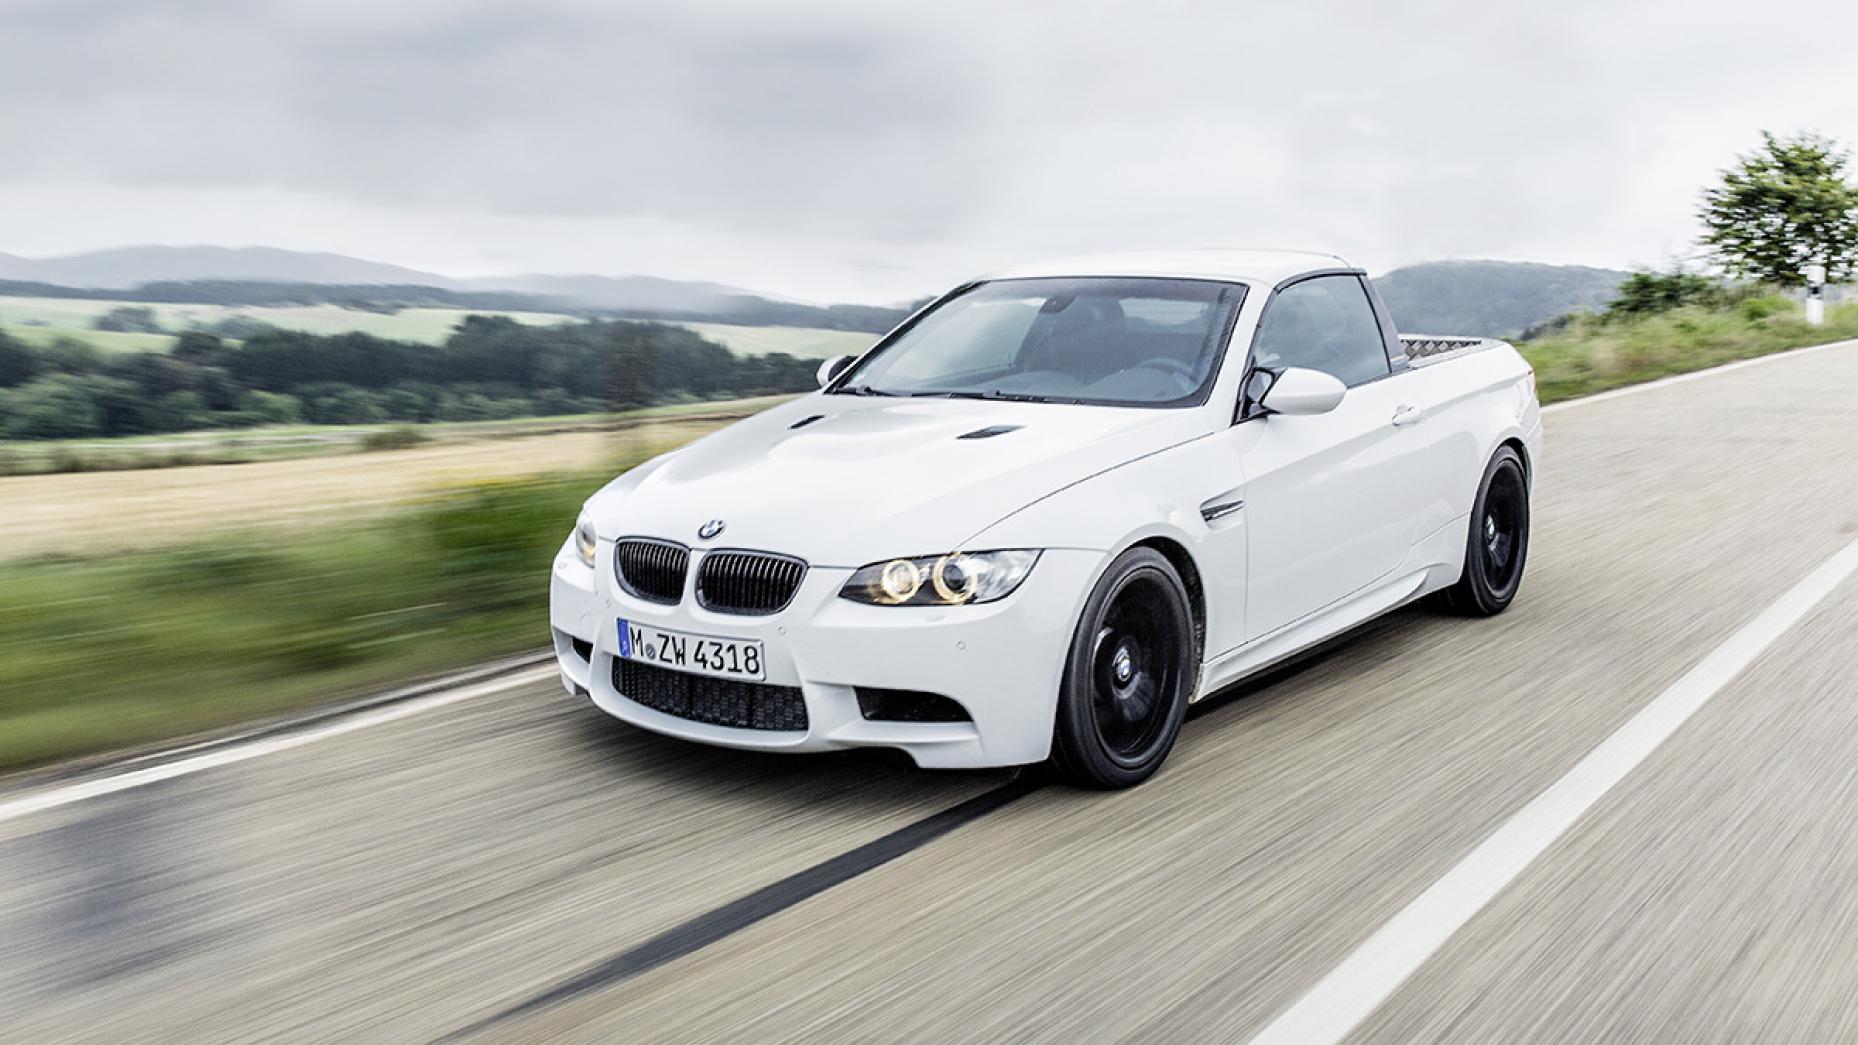 BMW làm bán tải là có thật, thậm chí còn là M3 với tốc độ tối đa 240km/h - Ảnh 2.